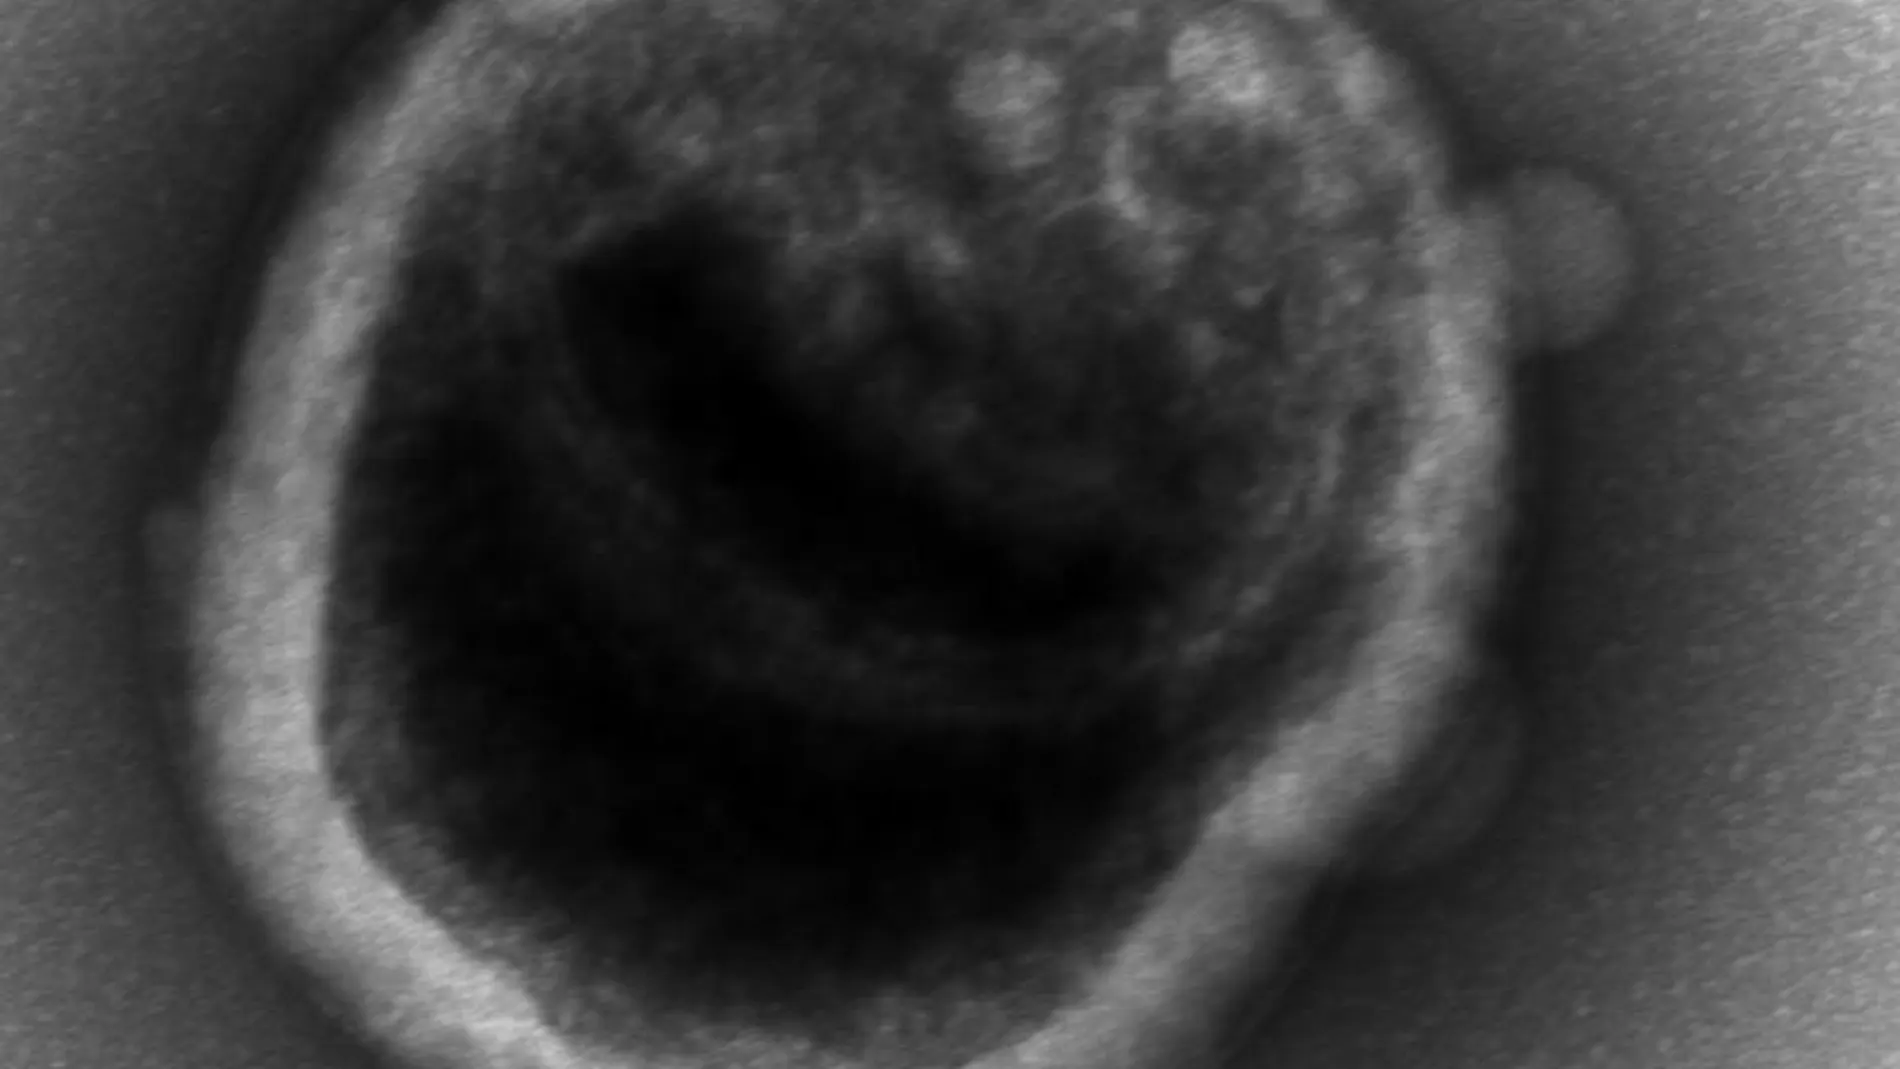 Una célula individual de una bacteria de una zona baja en oxígeno nacida en el laboratorio de la Universidad de Washington, vista al microscopio